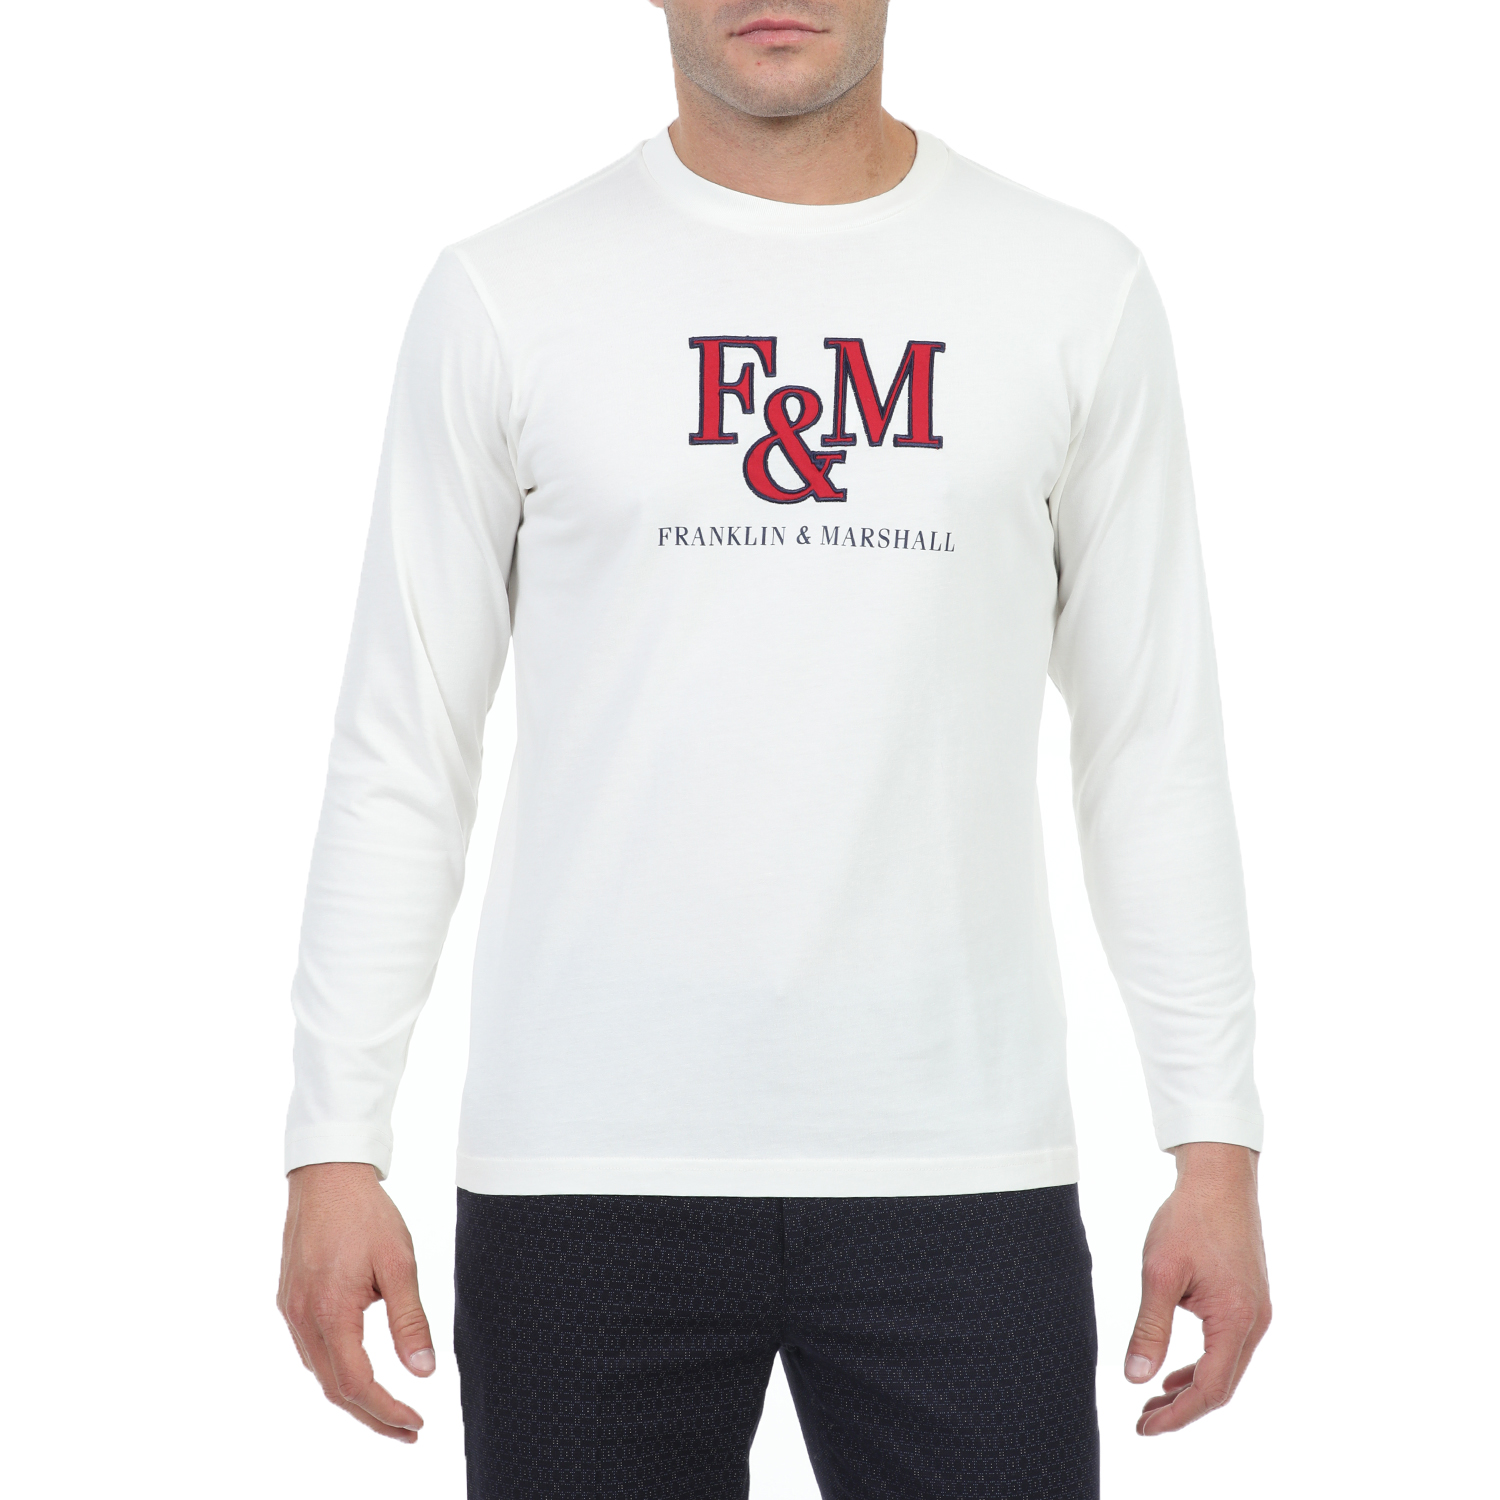 Ανδρικά/Ρούχα/Μπλούζες/Μακρυμάνικες FRANKLIN & MARSHALL - Ανδρική μακρυμάνικη μπλούζα FRANKLIN & MARSHALL λευκή